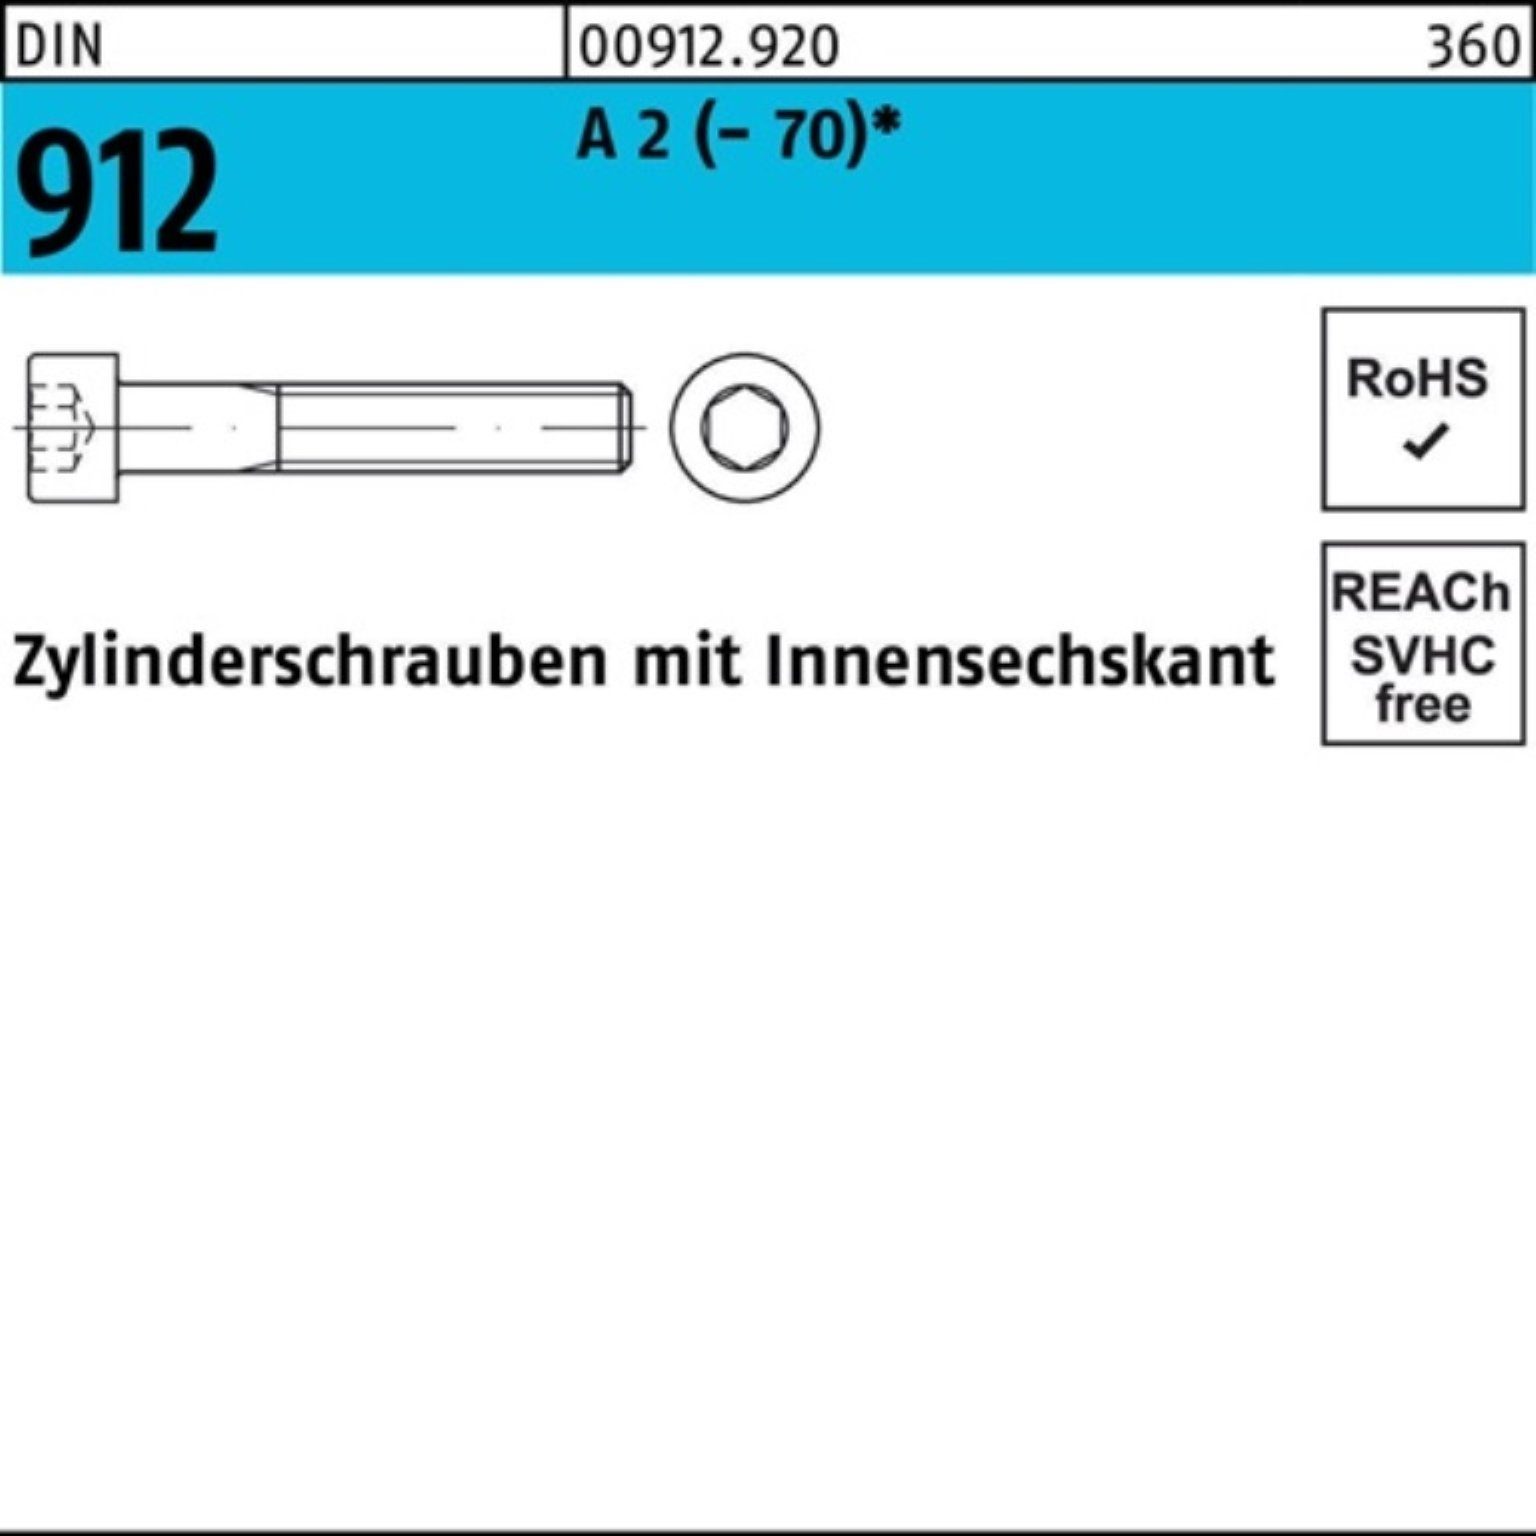 2 DIN 912 Innen-6kt Zylinderschraube 100er Reyher M20x Zylinderschraube 10 Pack (70) St A 30